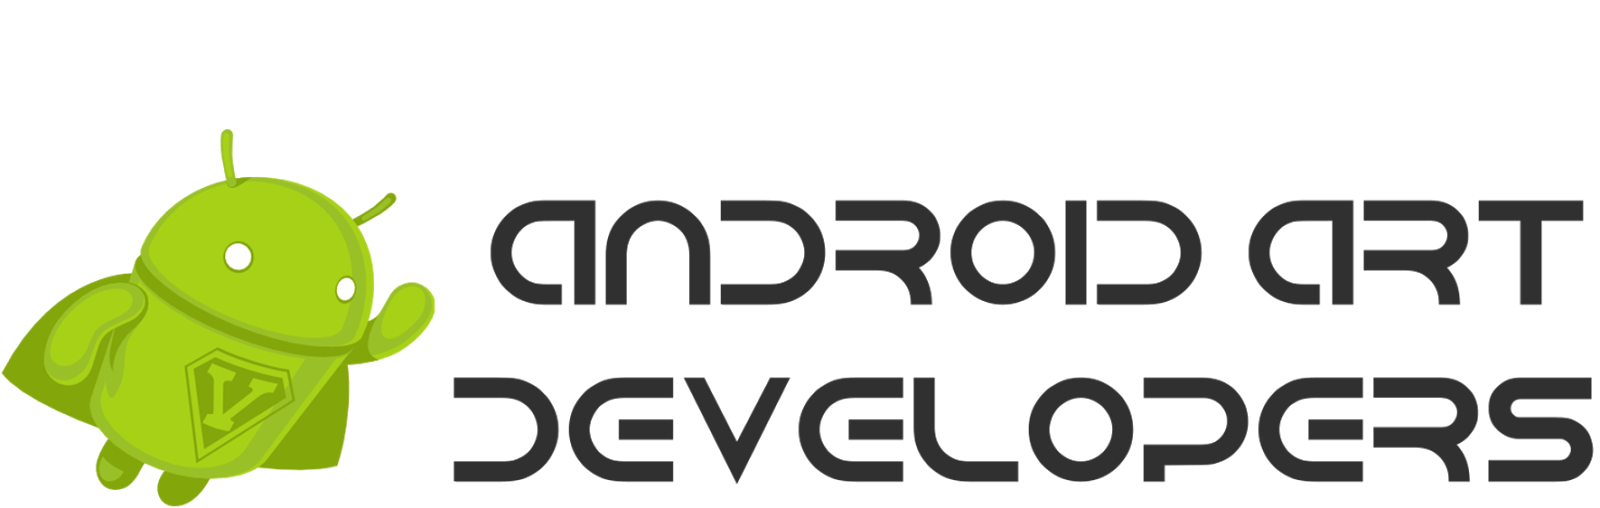 Android Art Developer